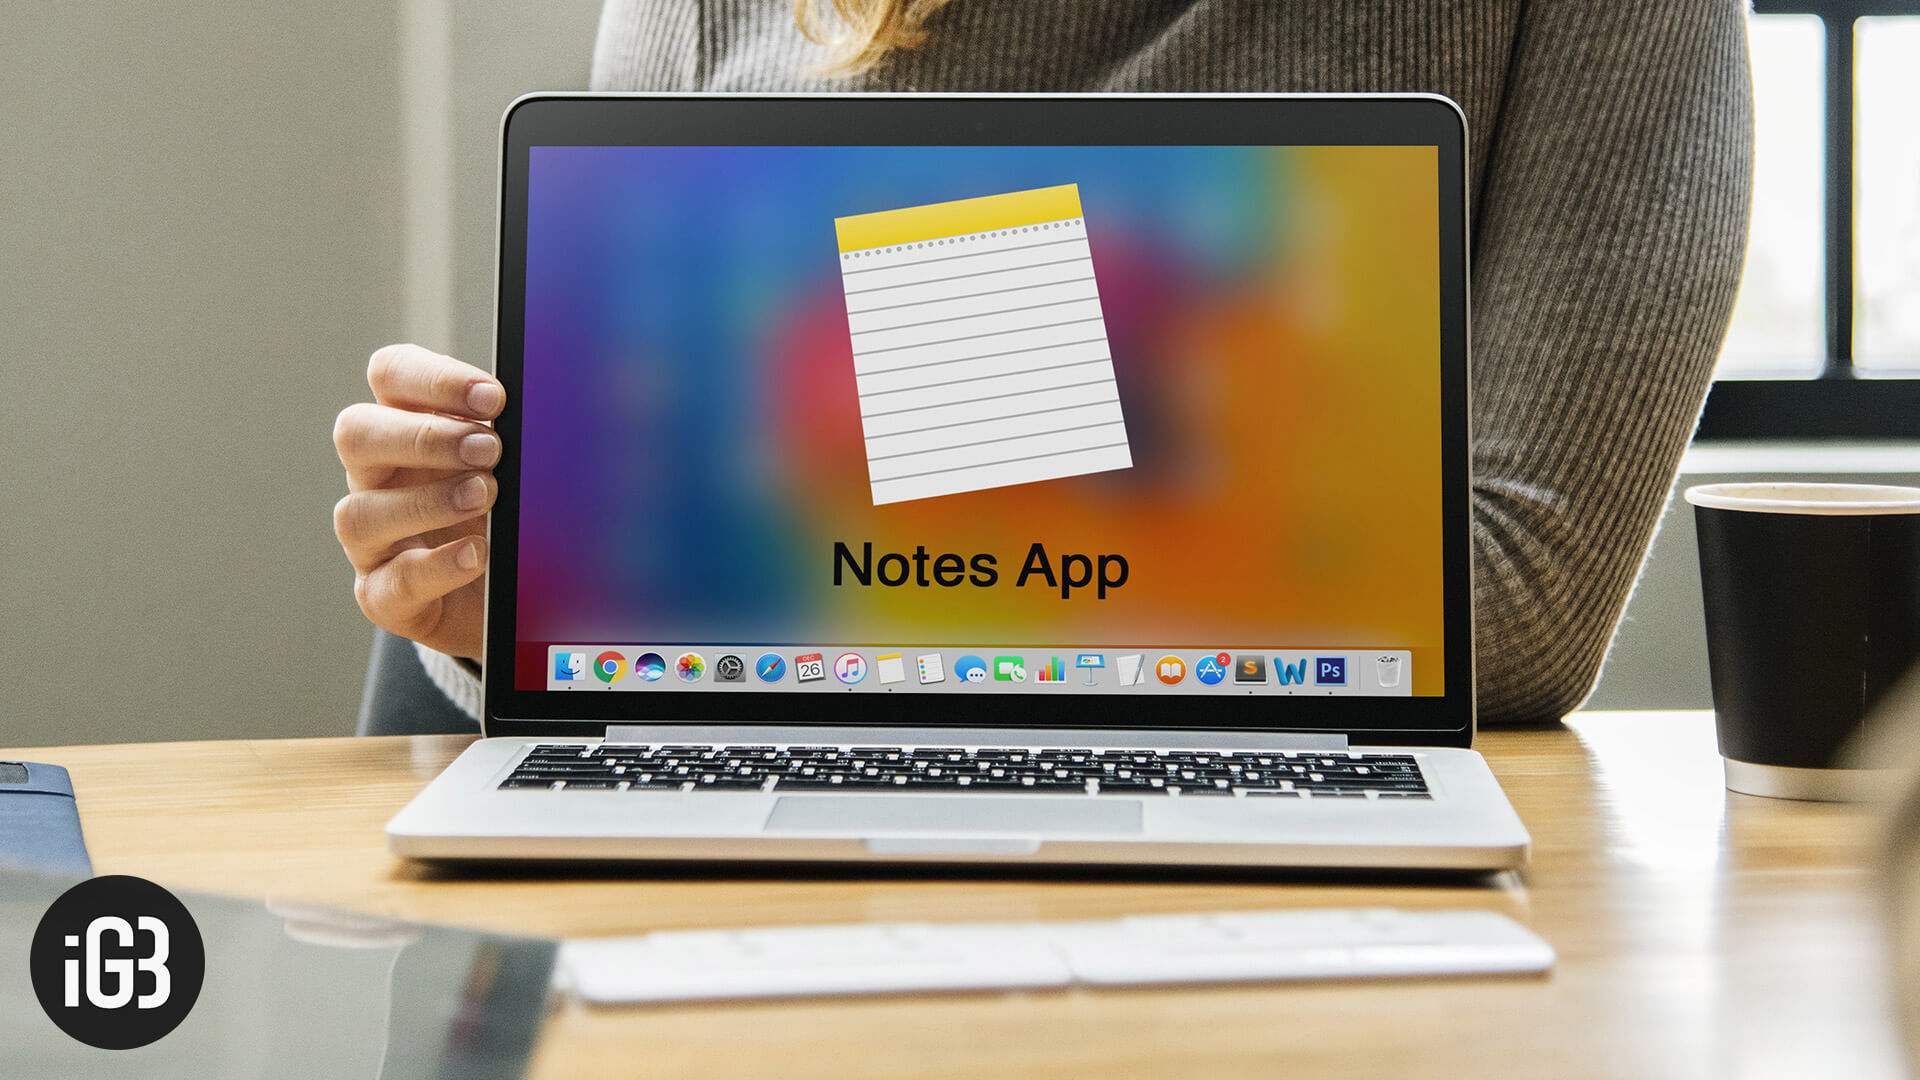 Note taking app on mac